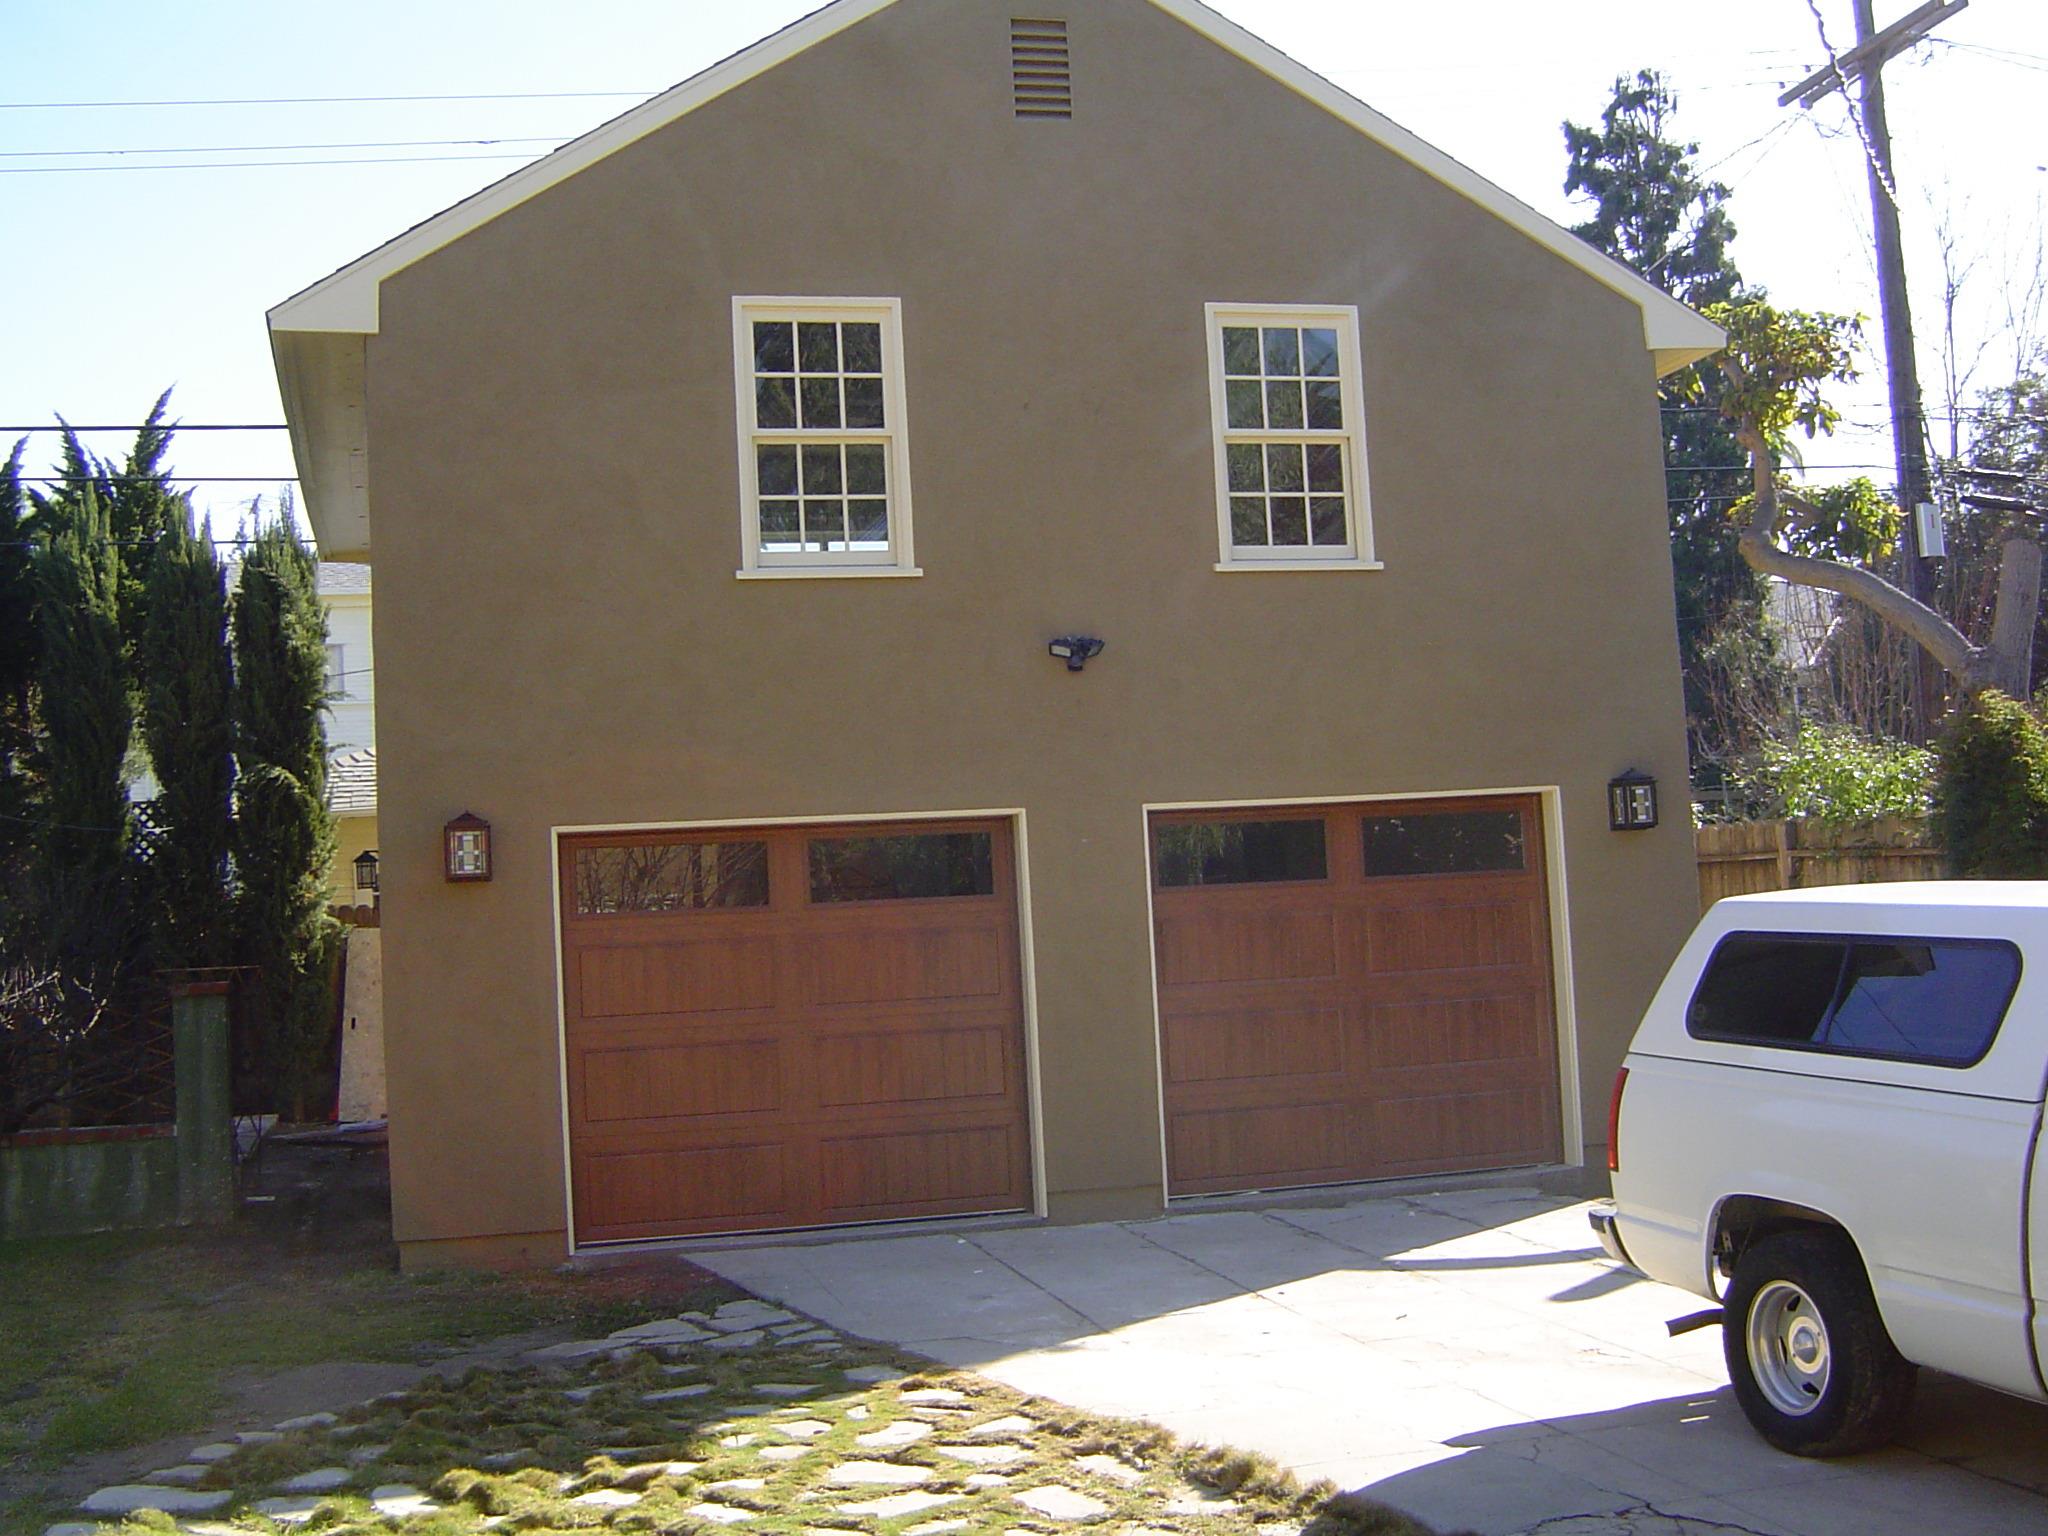 Hanover garage 24x24 with garage door  in Los Angeles,California.ID number 99398-5.